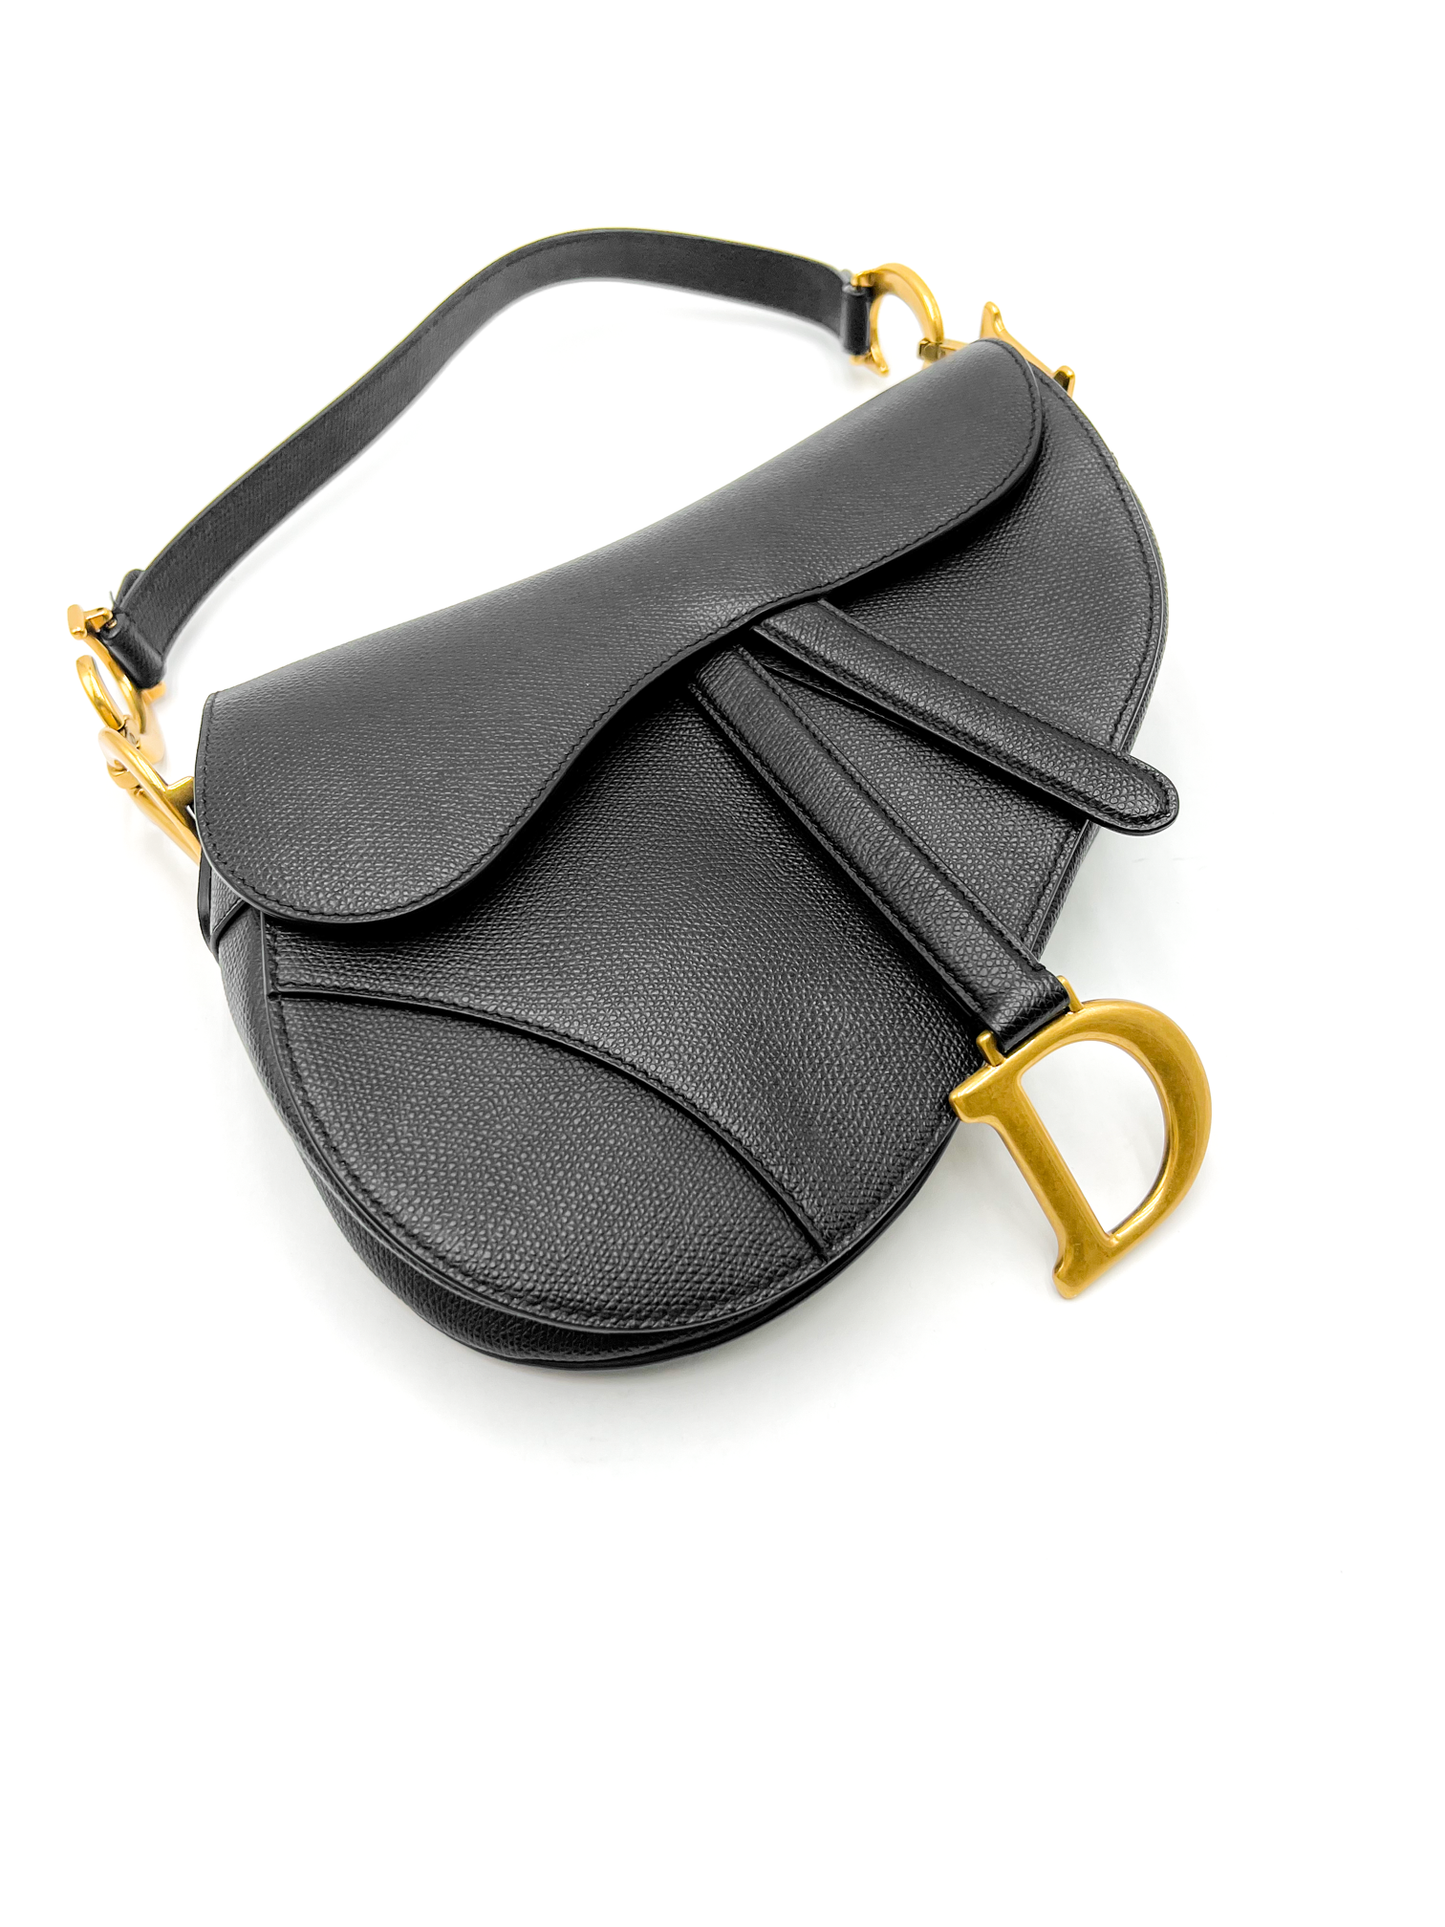 Dior Saddle Bag Black with Gold Hardware